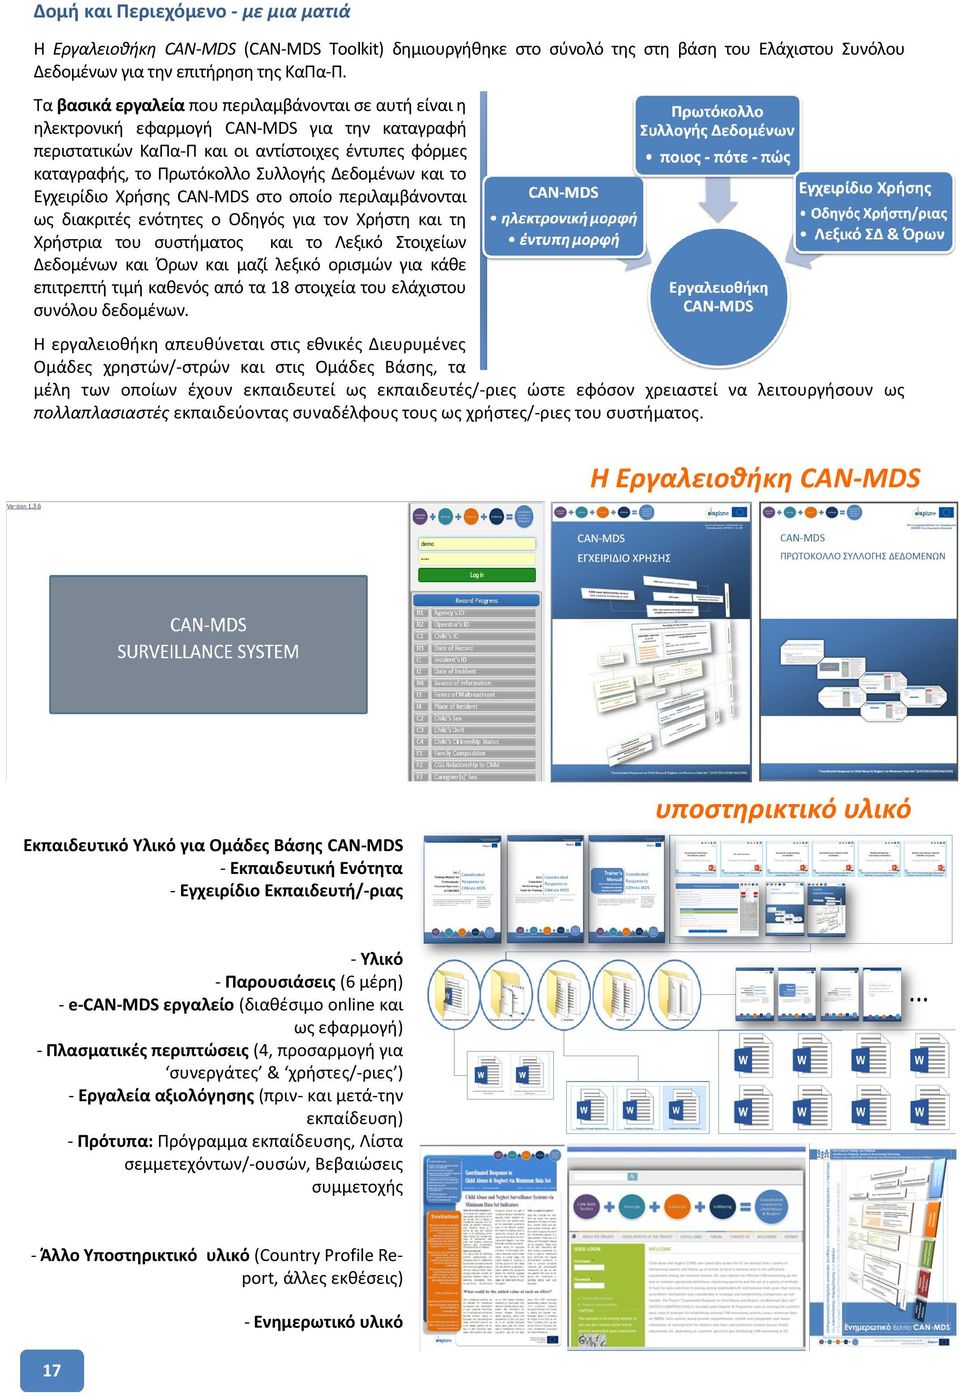 Δεδομένων και το Εγχειρίδιο Χρήσης CAN-MDS στο οποίο περιλαμβάνονται ως διακριτές ενότητες ο Οδηγός για τον Χρήστη και τη Χρήστρια του συστήματος και το Λεξικό Στοιχείων Δεδομένων και Όρων και μαζί